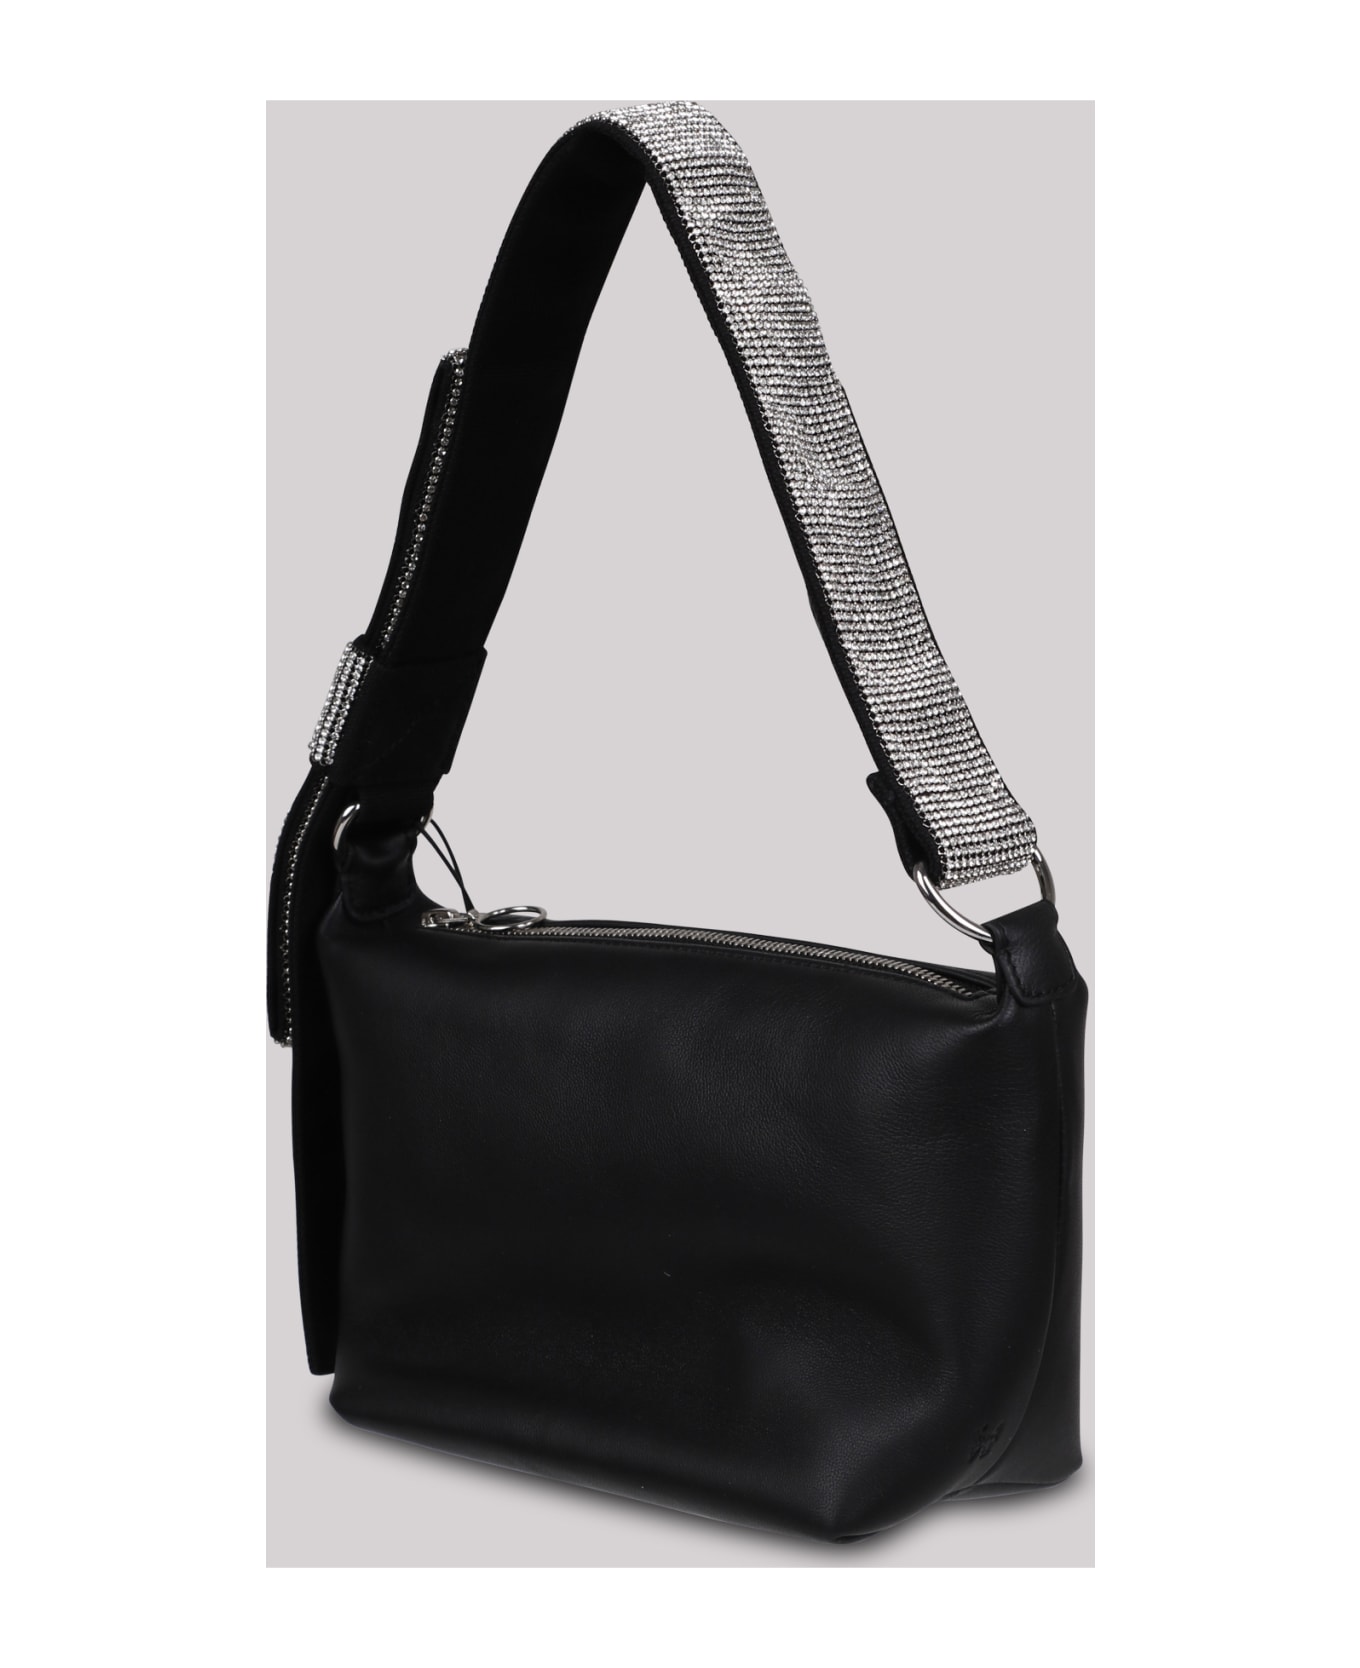 Kara Crystal Bow Leather Shoulder Bag